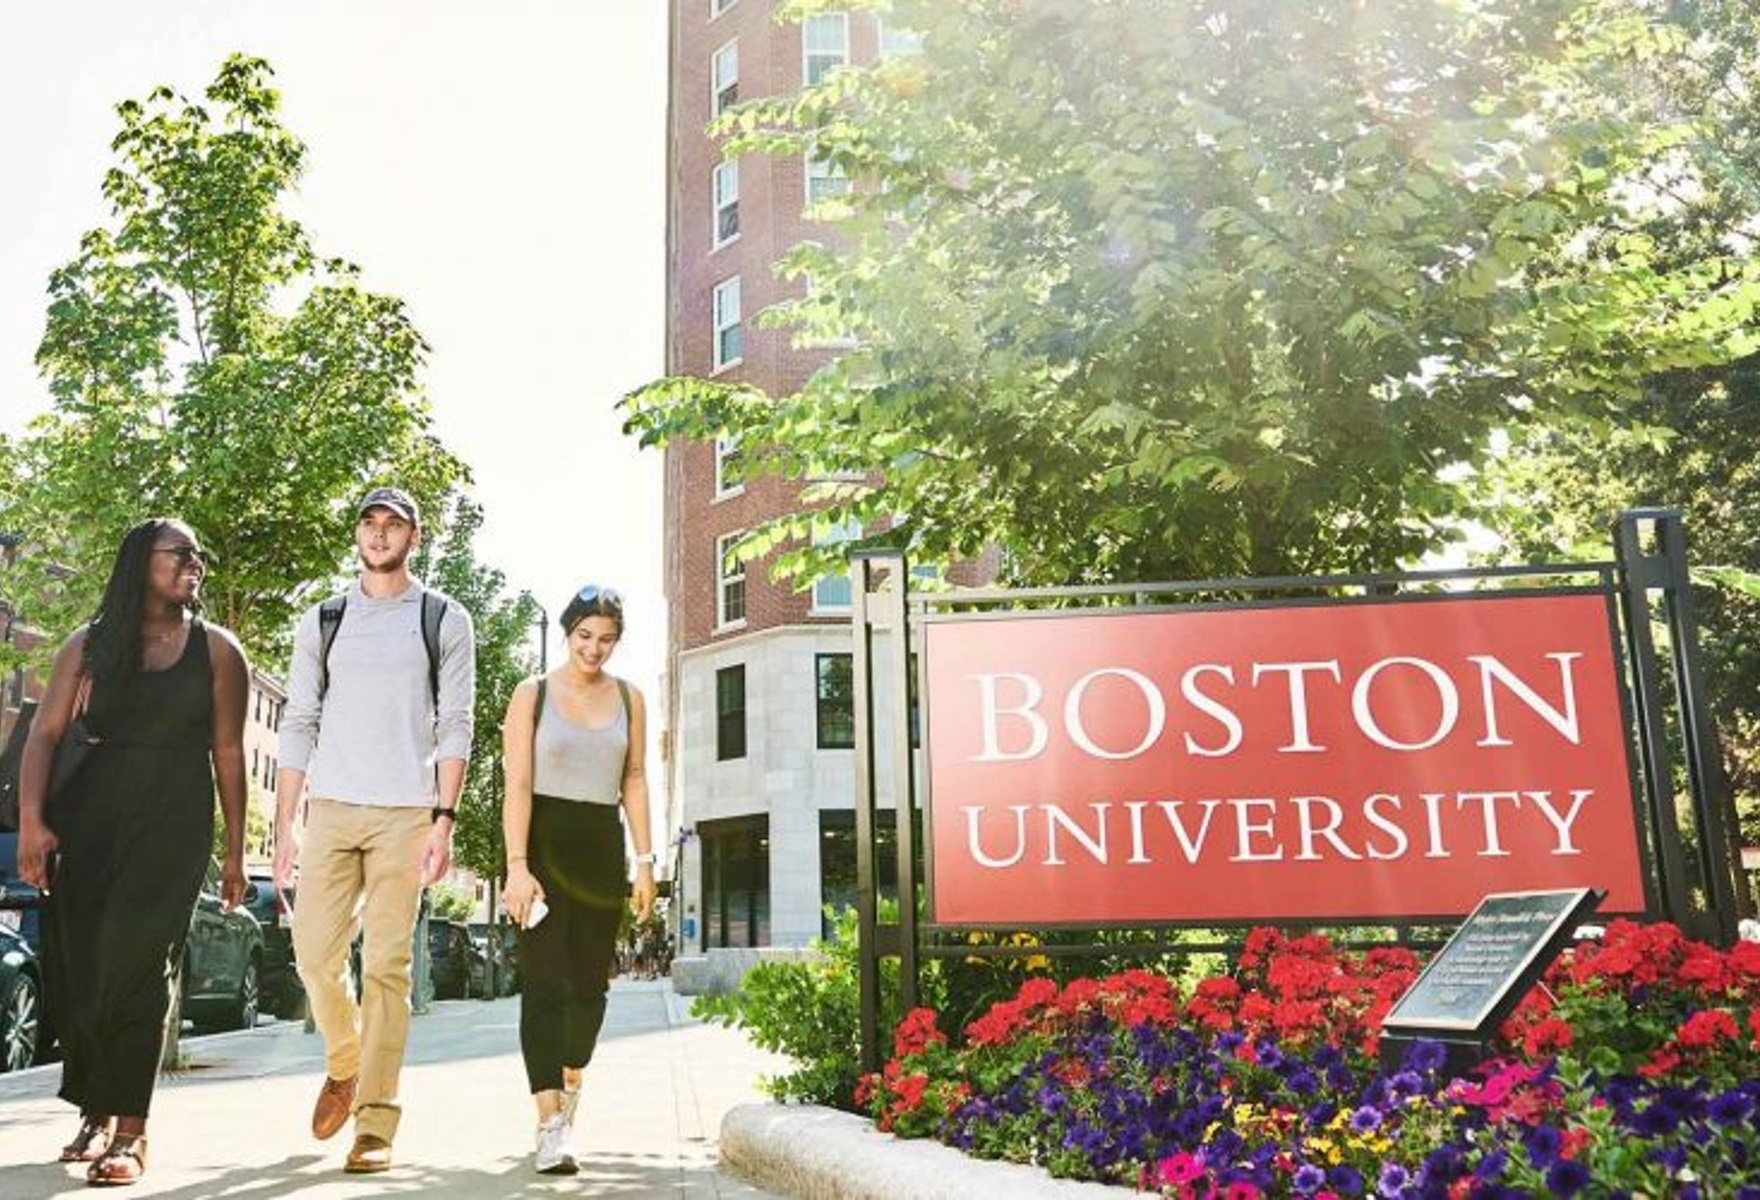 Trustee Scholarship 2024 at Boston University